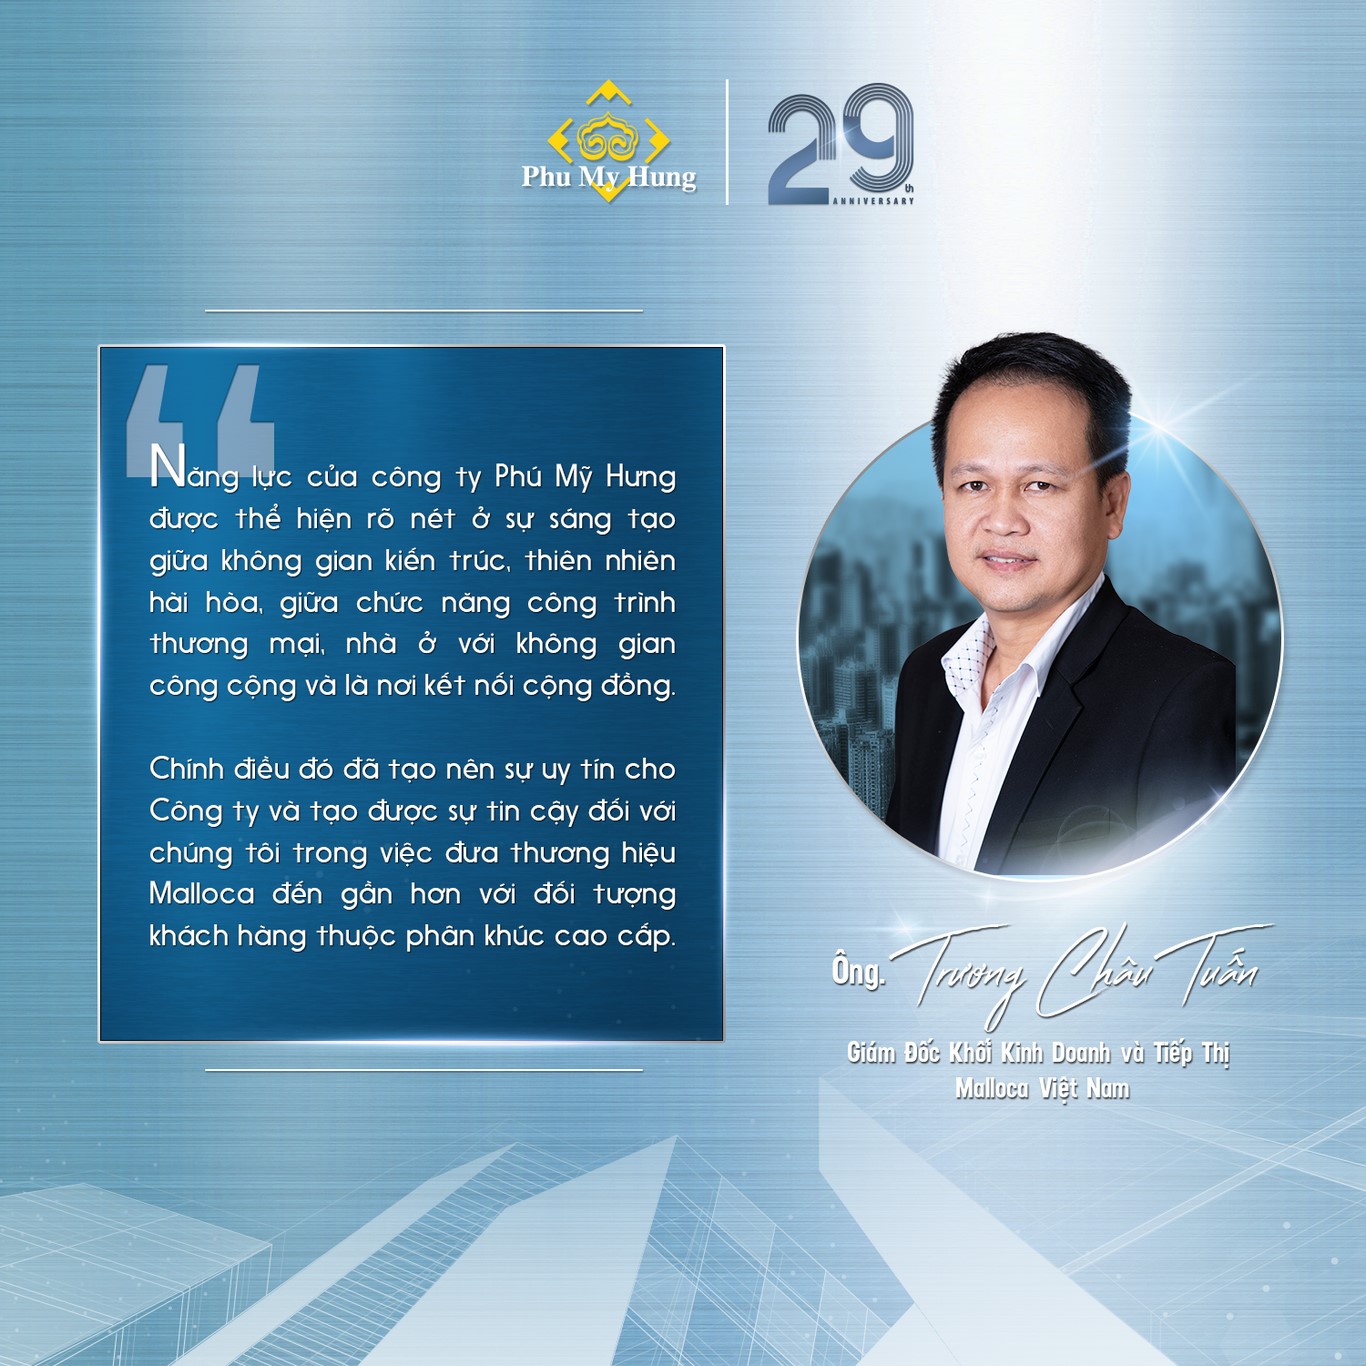 Ông Trương Châu Tuấn – Giám đốc Khối Kinh doanh và Tiếp Thị Malloca Việt Nam